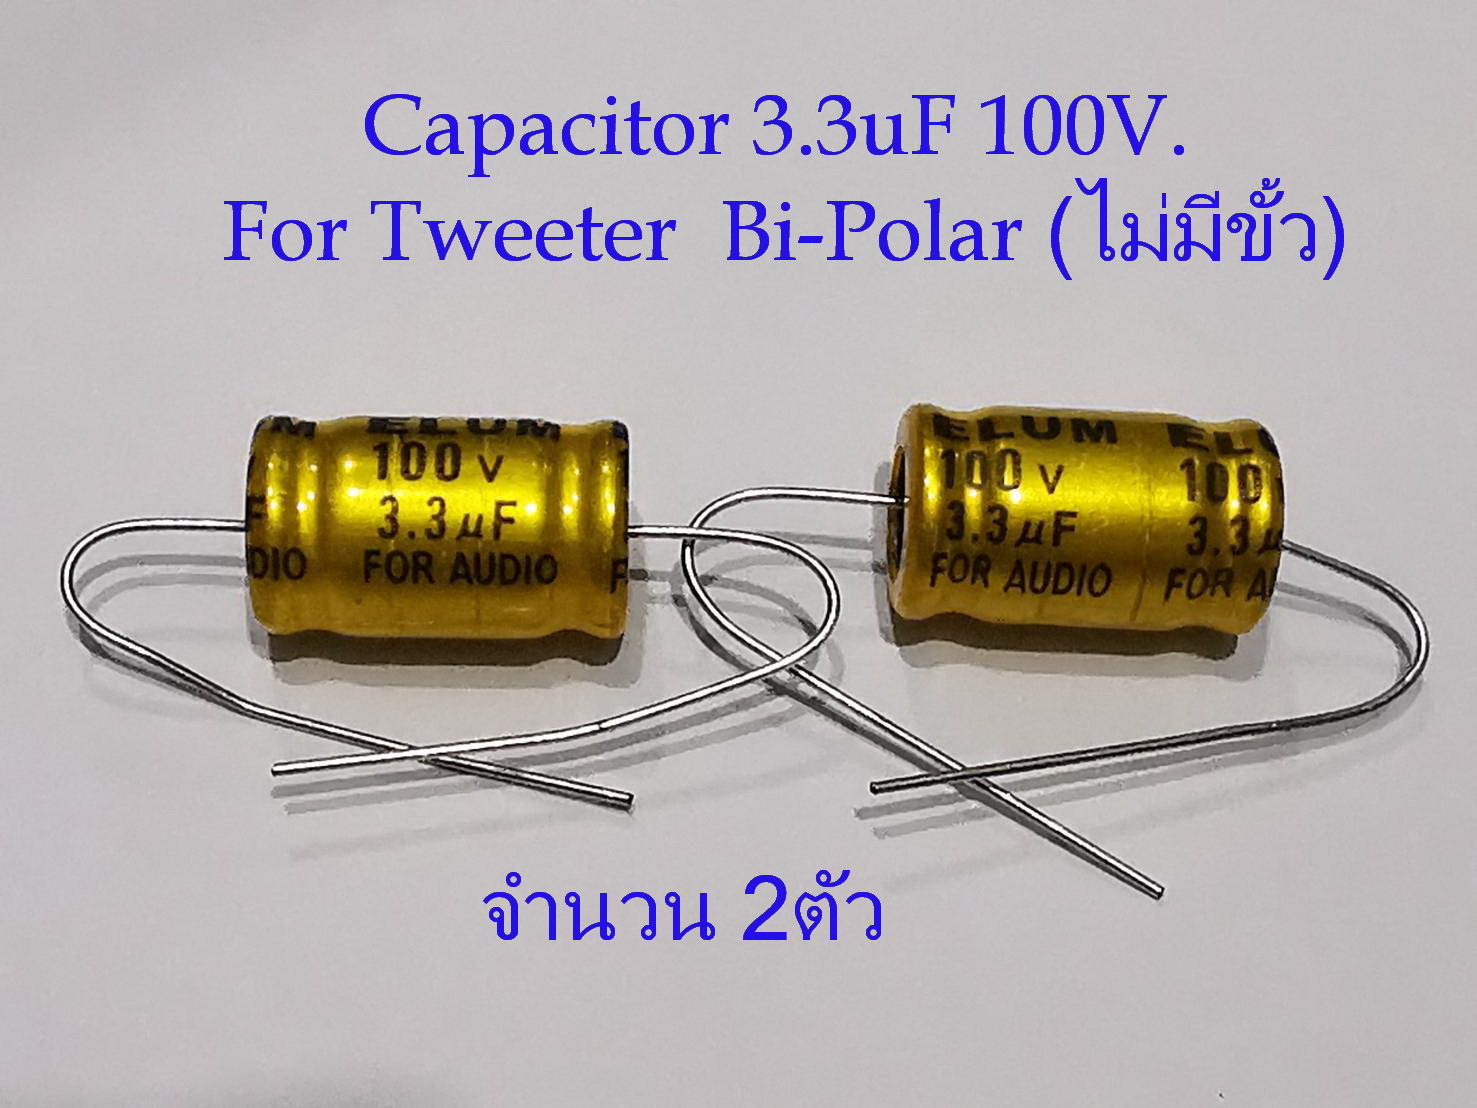 2ตัว(1คู่) Capacitor 3.3uf.50V./4uF50V./ 3.3uF100V./8uF50V.  สำหรับลำโพงเสียงแหลม-กลาง ชนิด Bi-Polar ไม่มีขั้ว